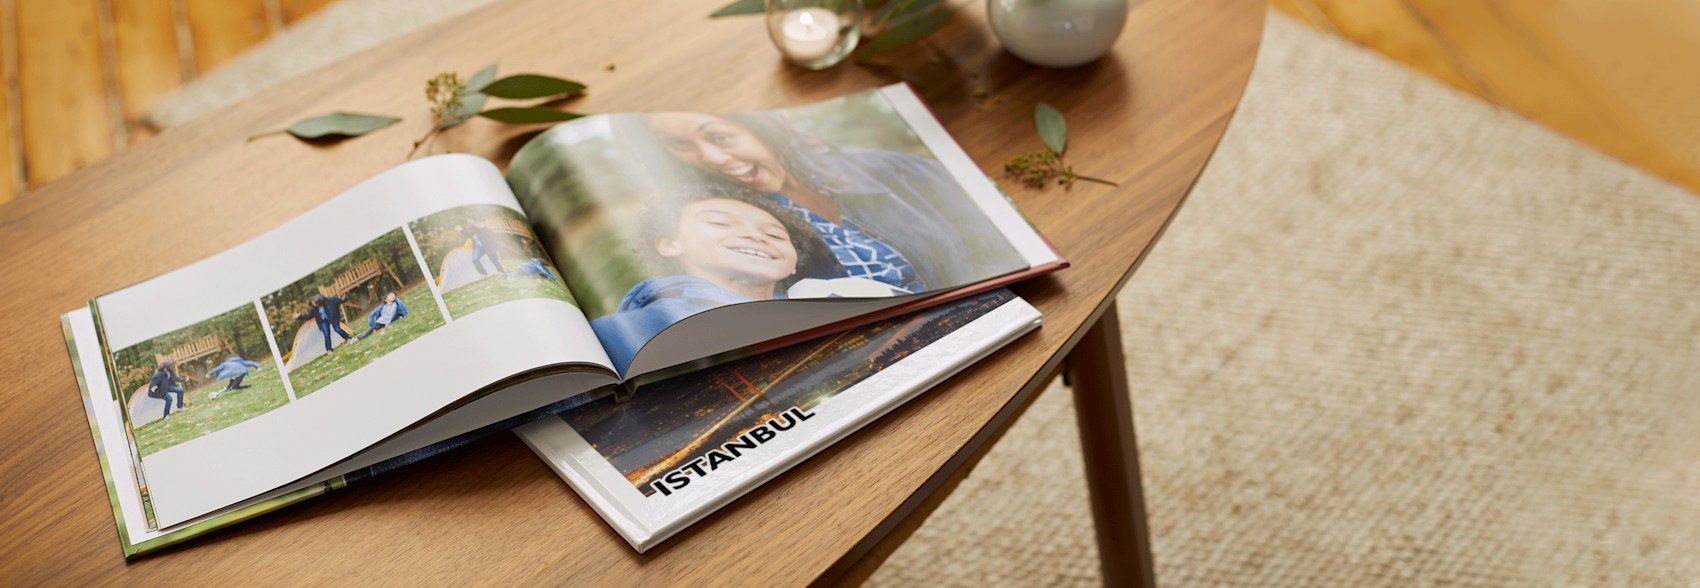 Album fotografico personalizzato fotolibro in pelle con carta autoadesiva album per raccoglitori ad anelli libro fotografico famiglia fotolibri per San Valentino Album fotografico personalizzato 